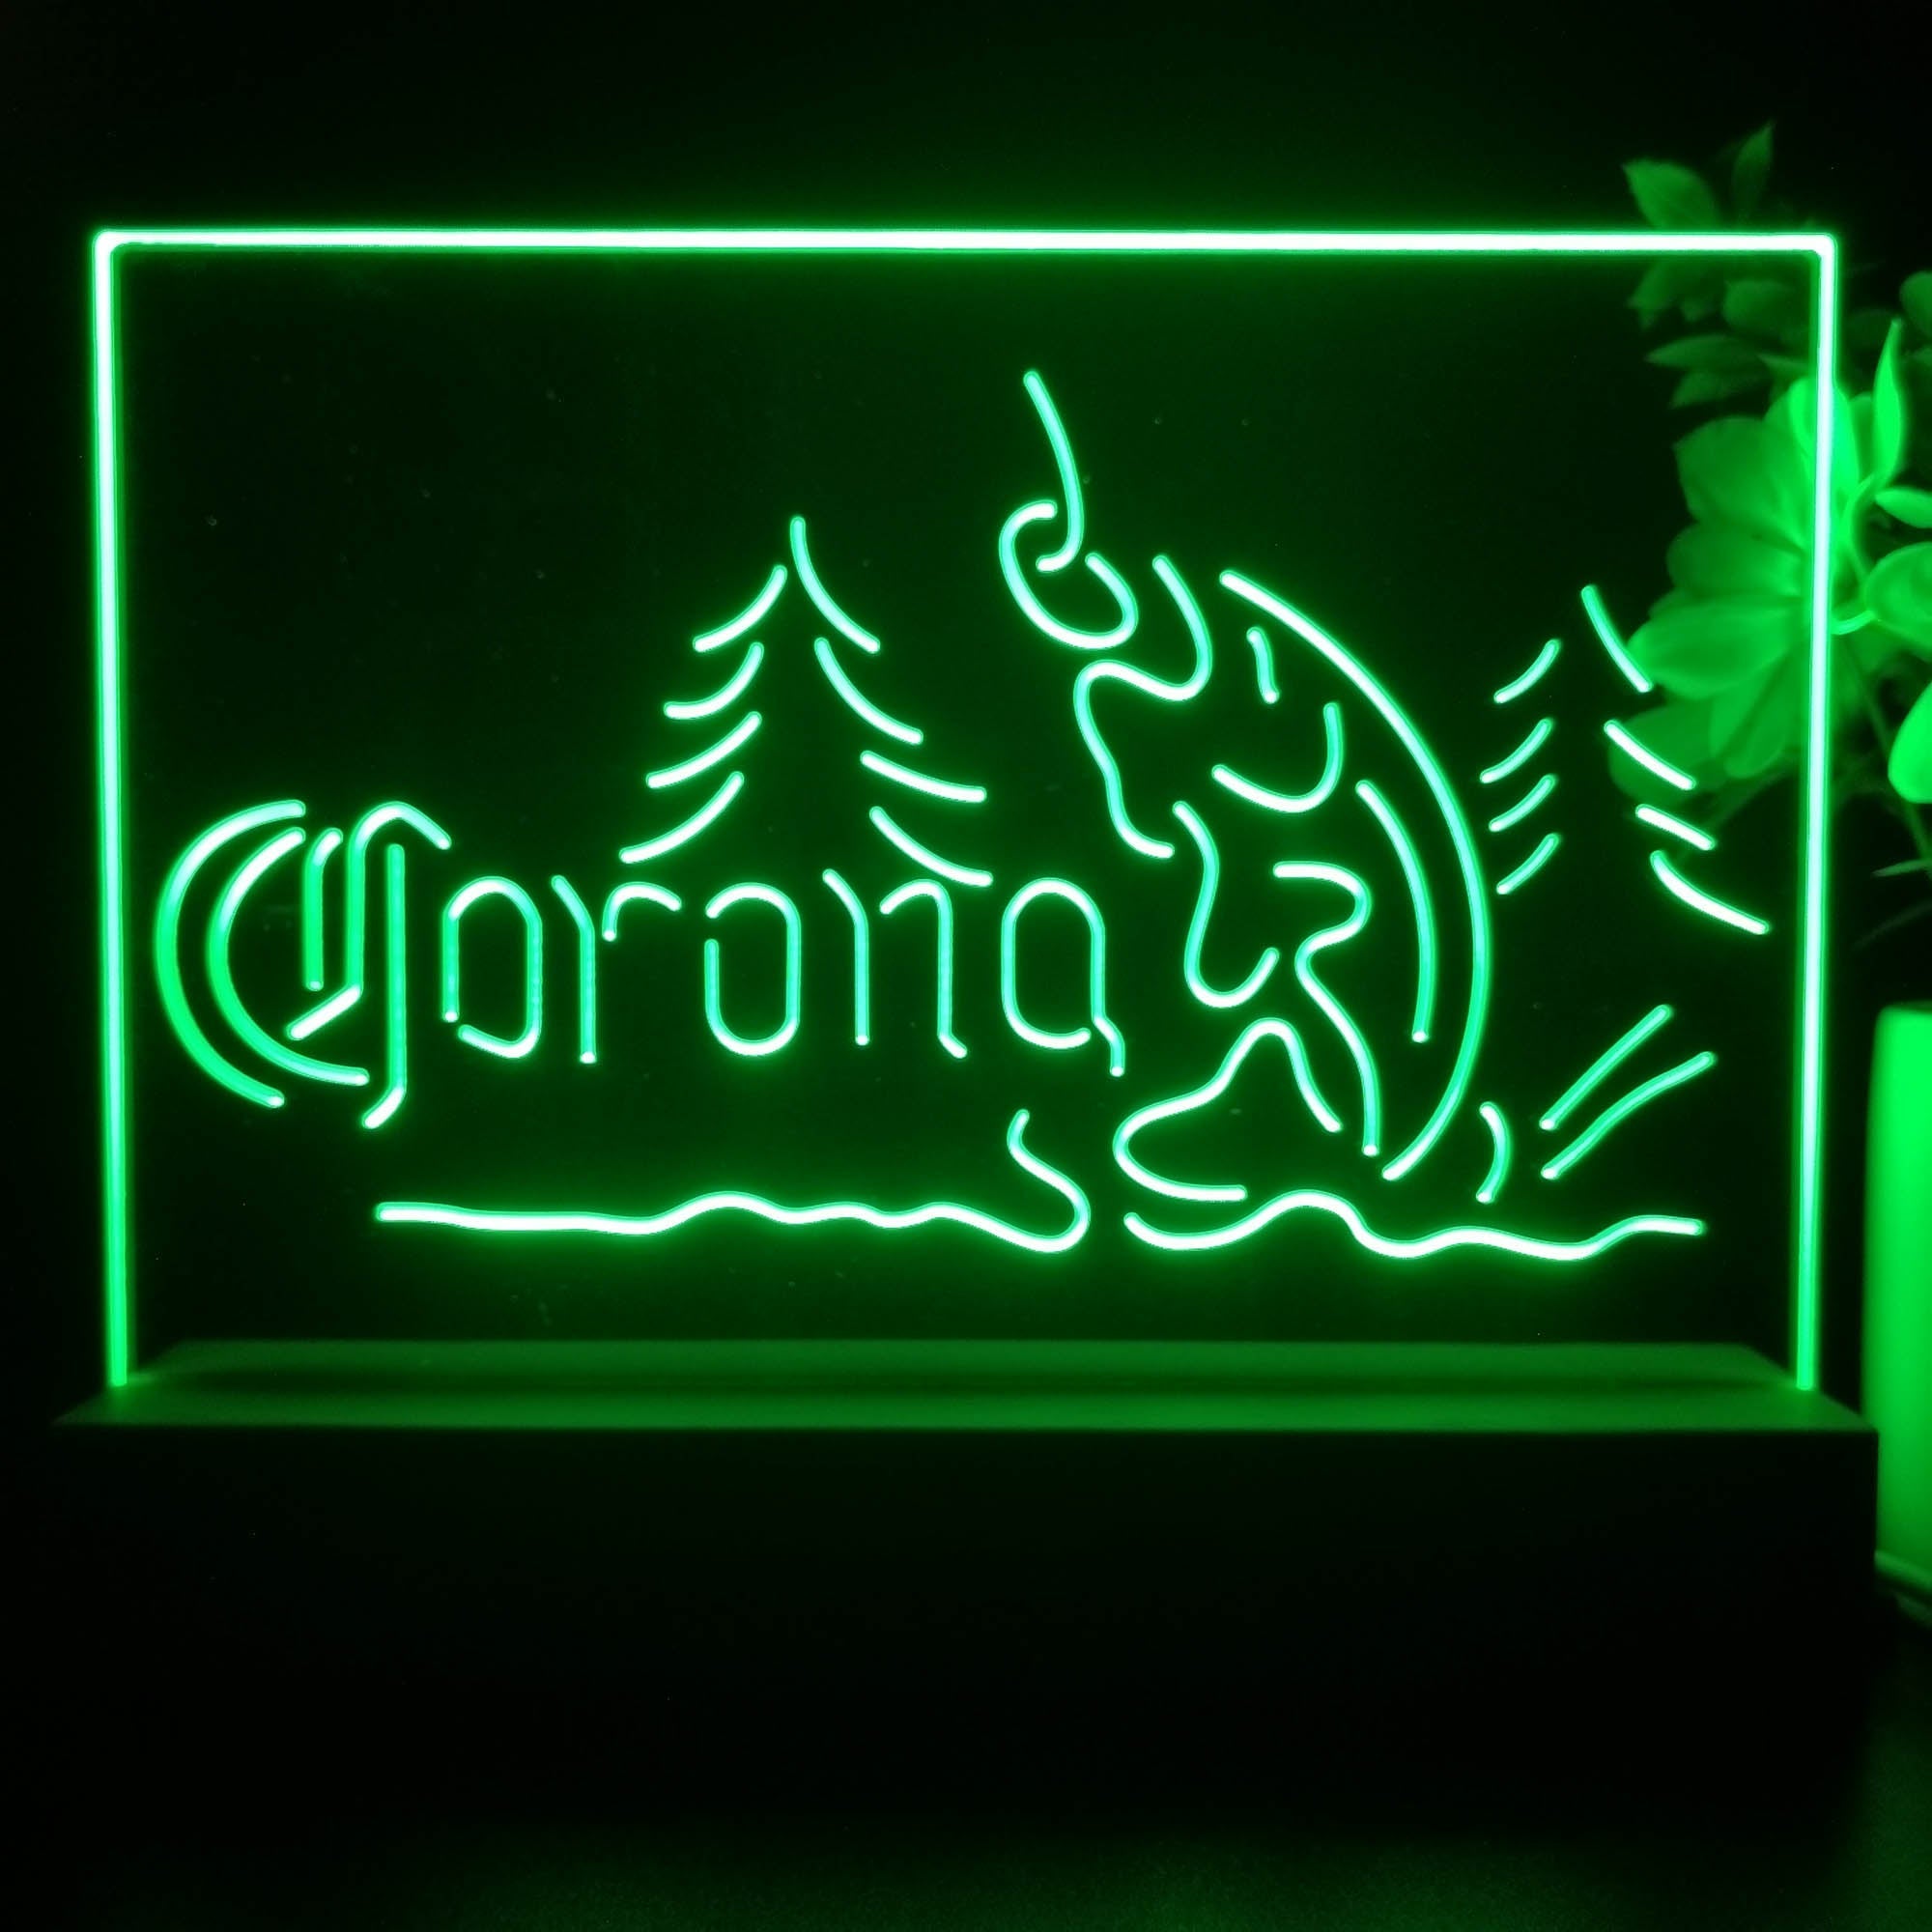 Corona Fishing Cabin House Neon Sign Pub Bar Lamp